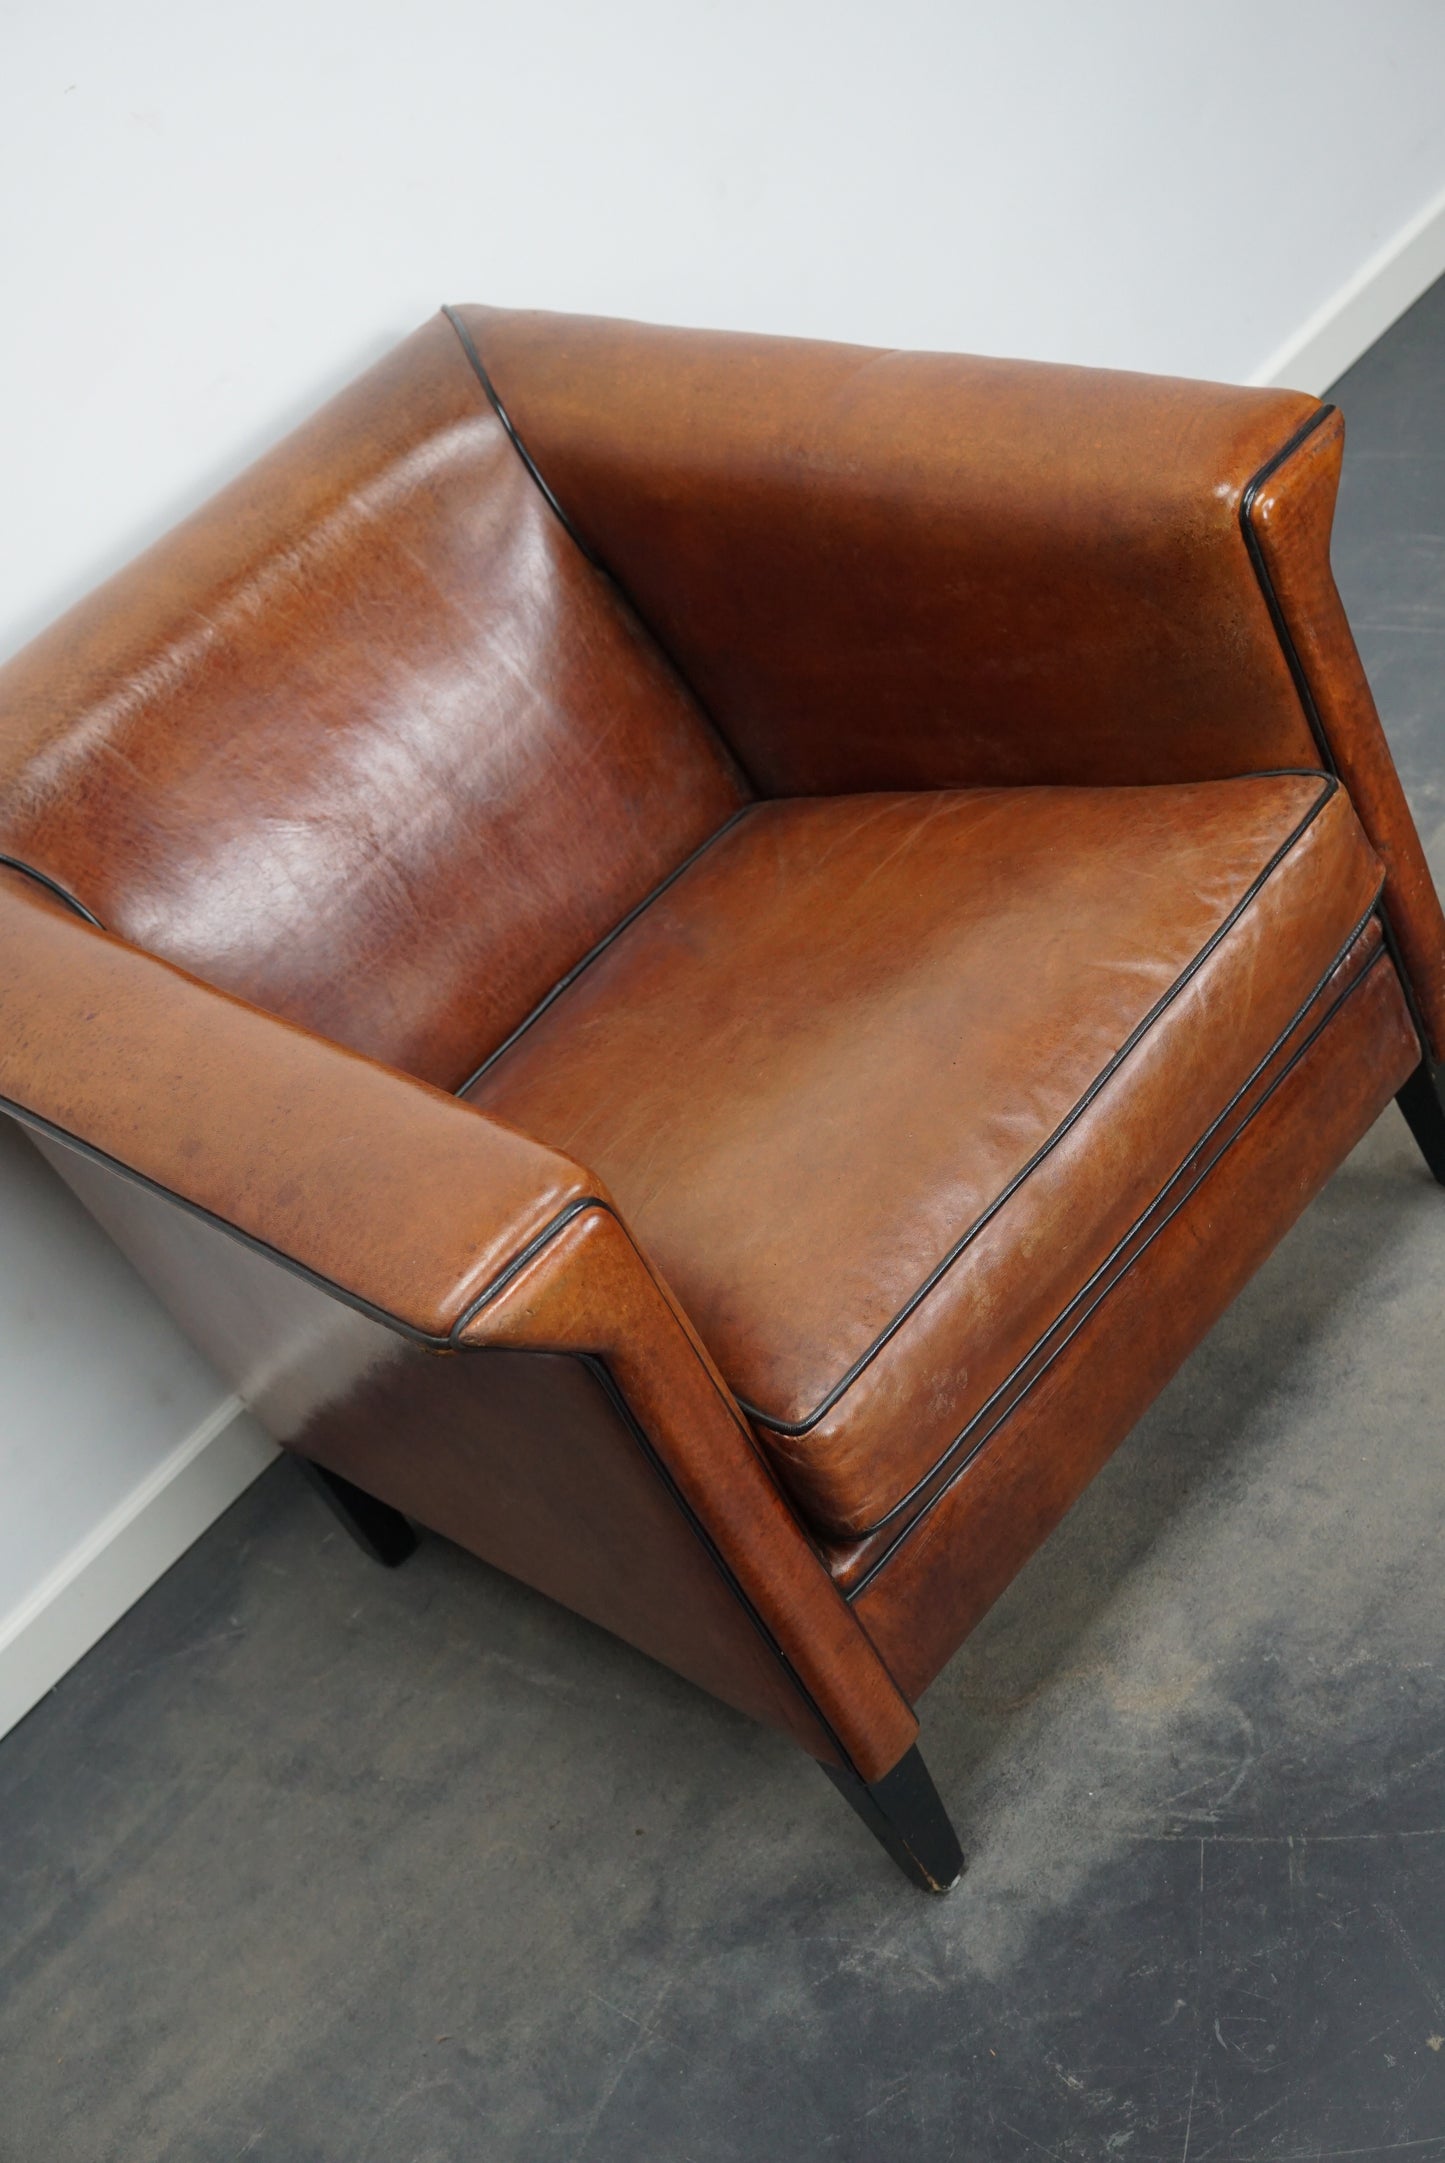 Vintage Dutch Cognac Colored Leather Club Chair Art Deco Style